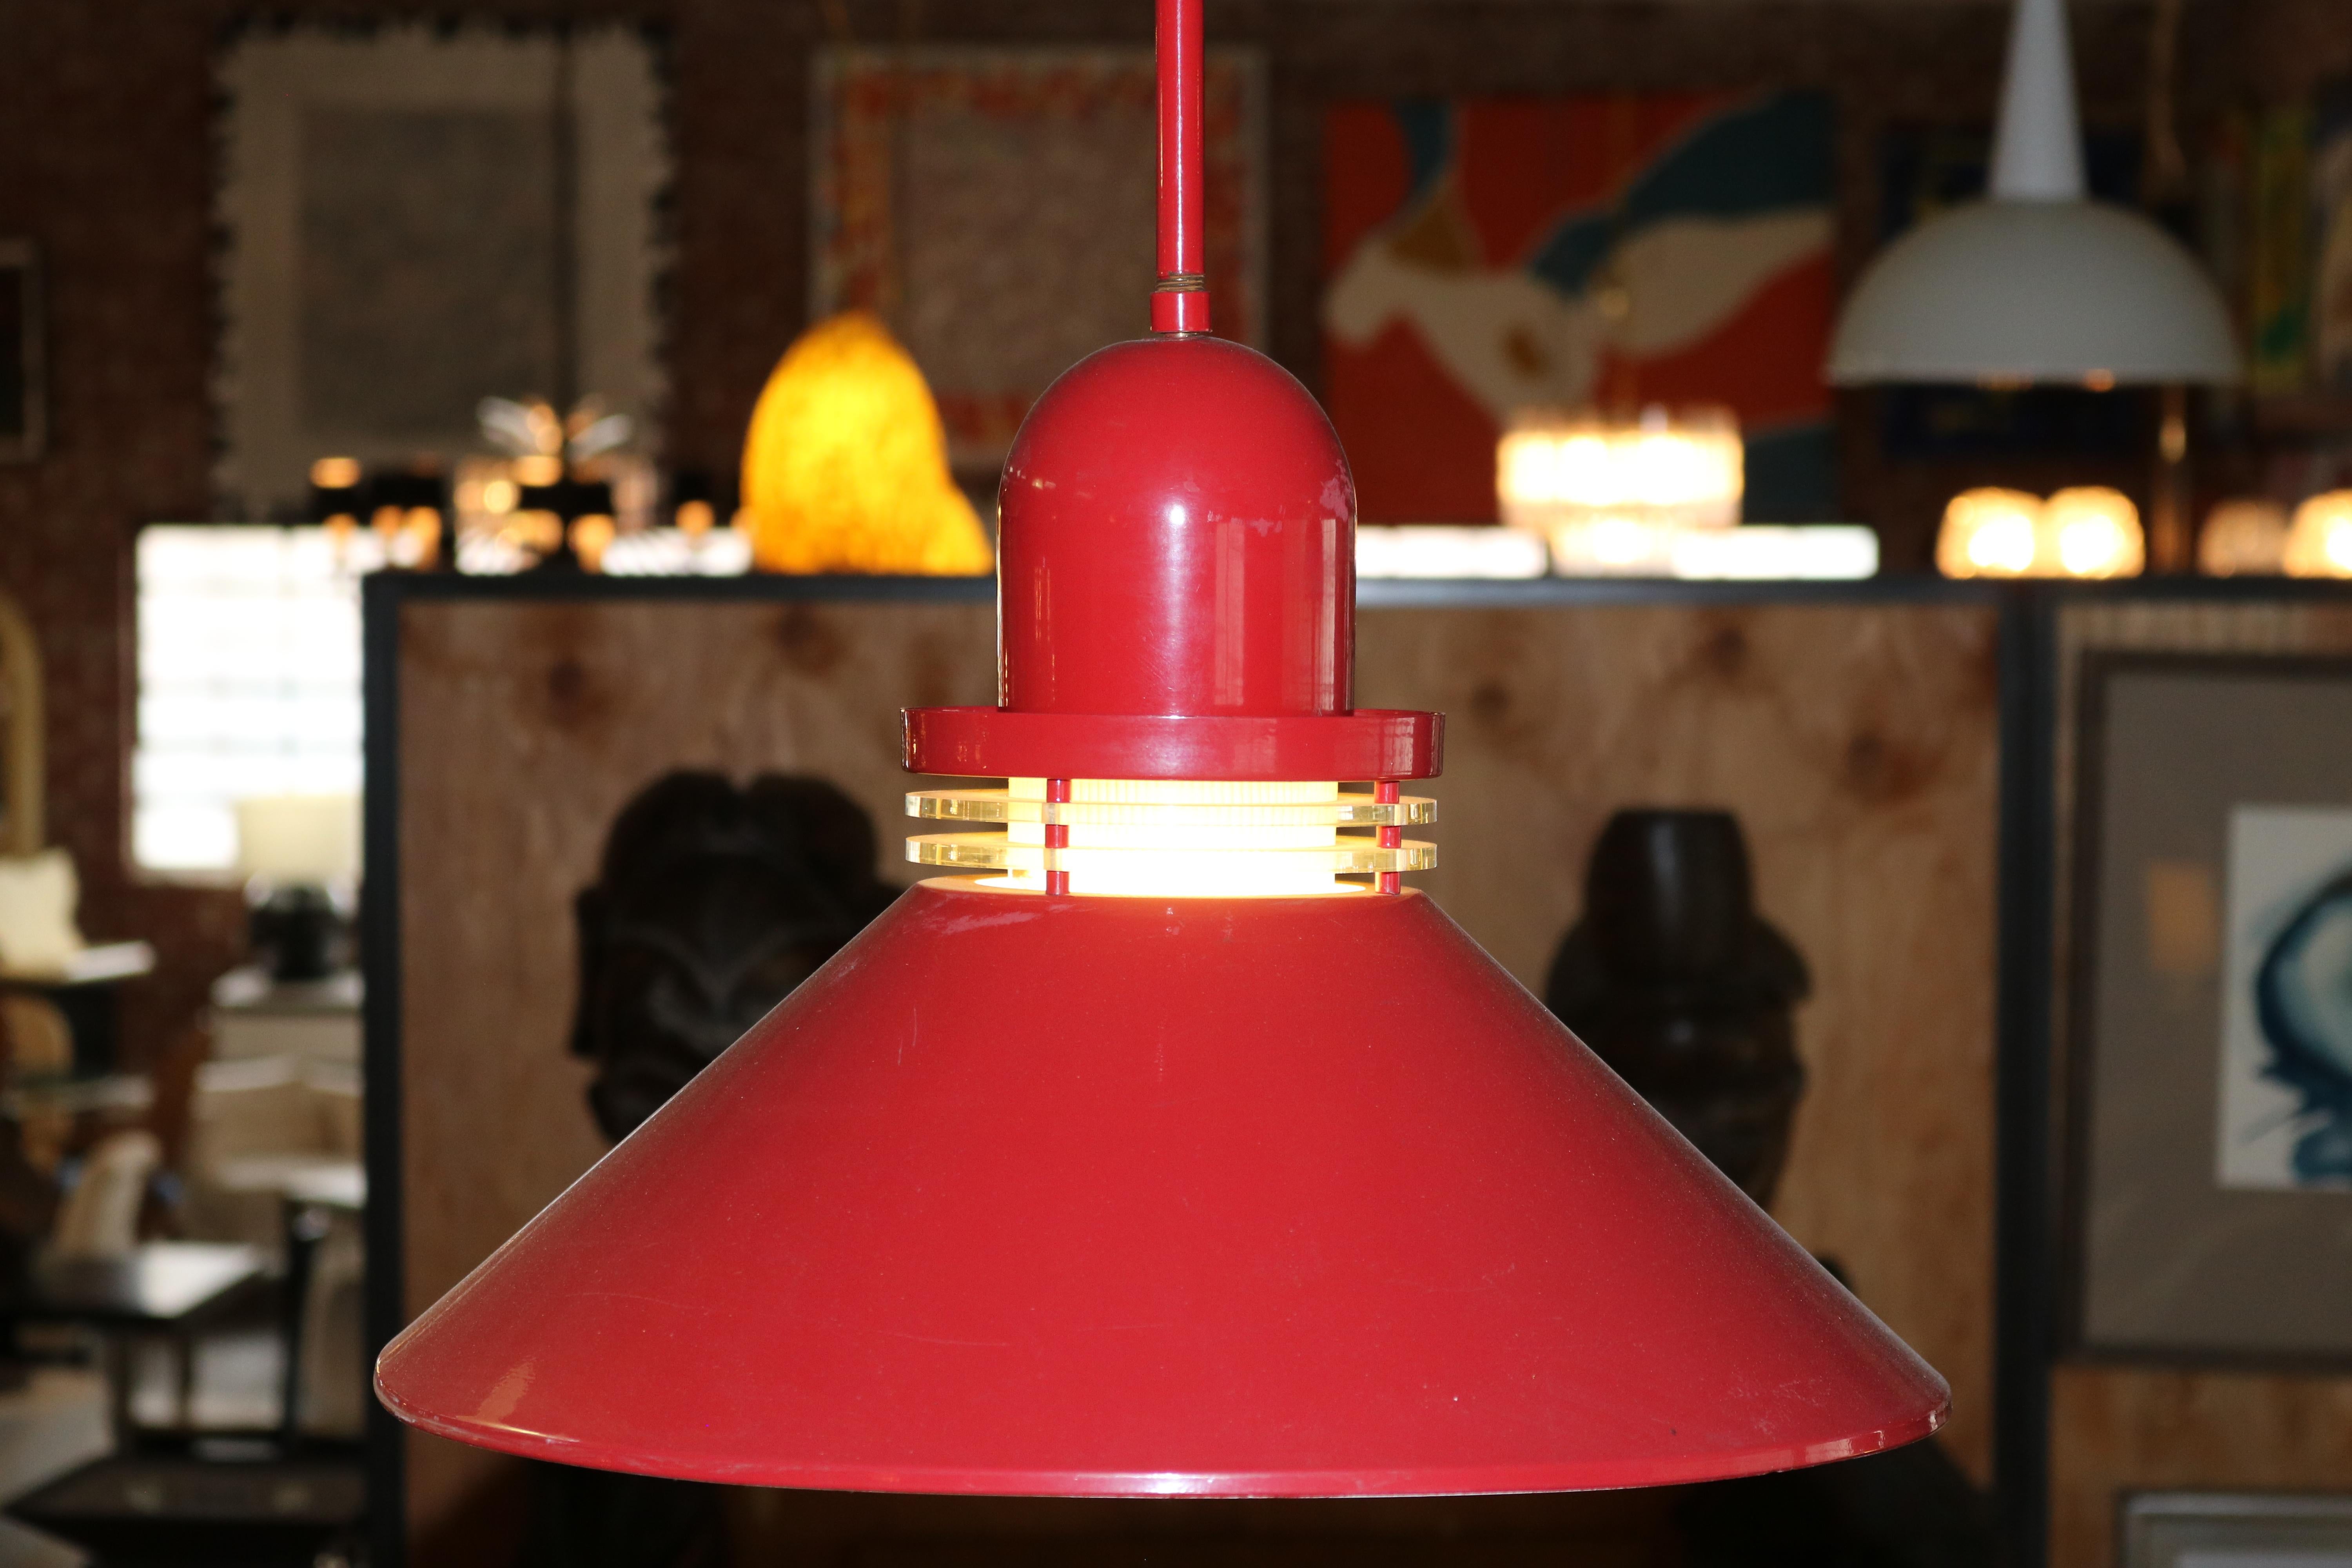 Ensemble de 4 luminaires suspendus des années 1970, revêtus de poudre rouge vif. 
Ces lampes suspendues sont prêtes à illuminer n'importe quelle pièce.
  